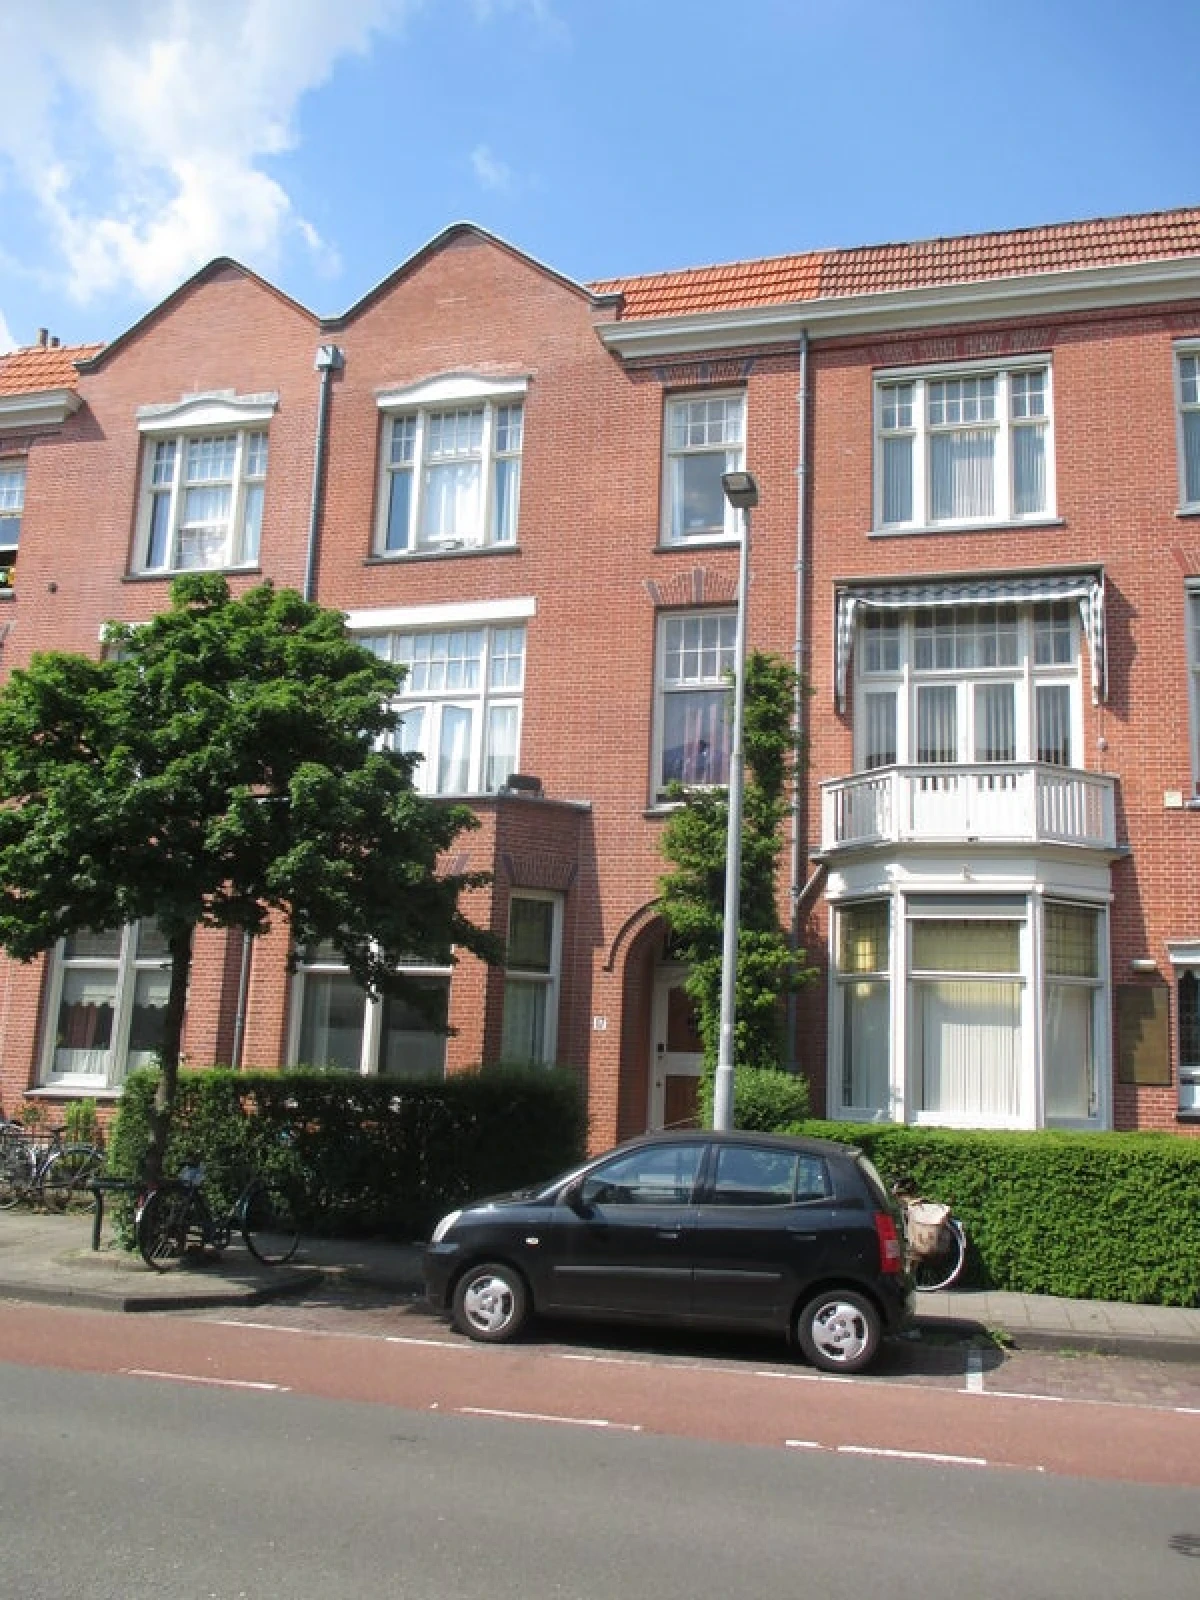 Tempeliersstraat 17, Haarlem